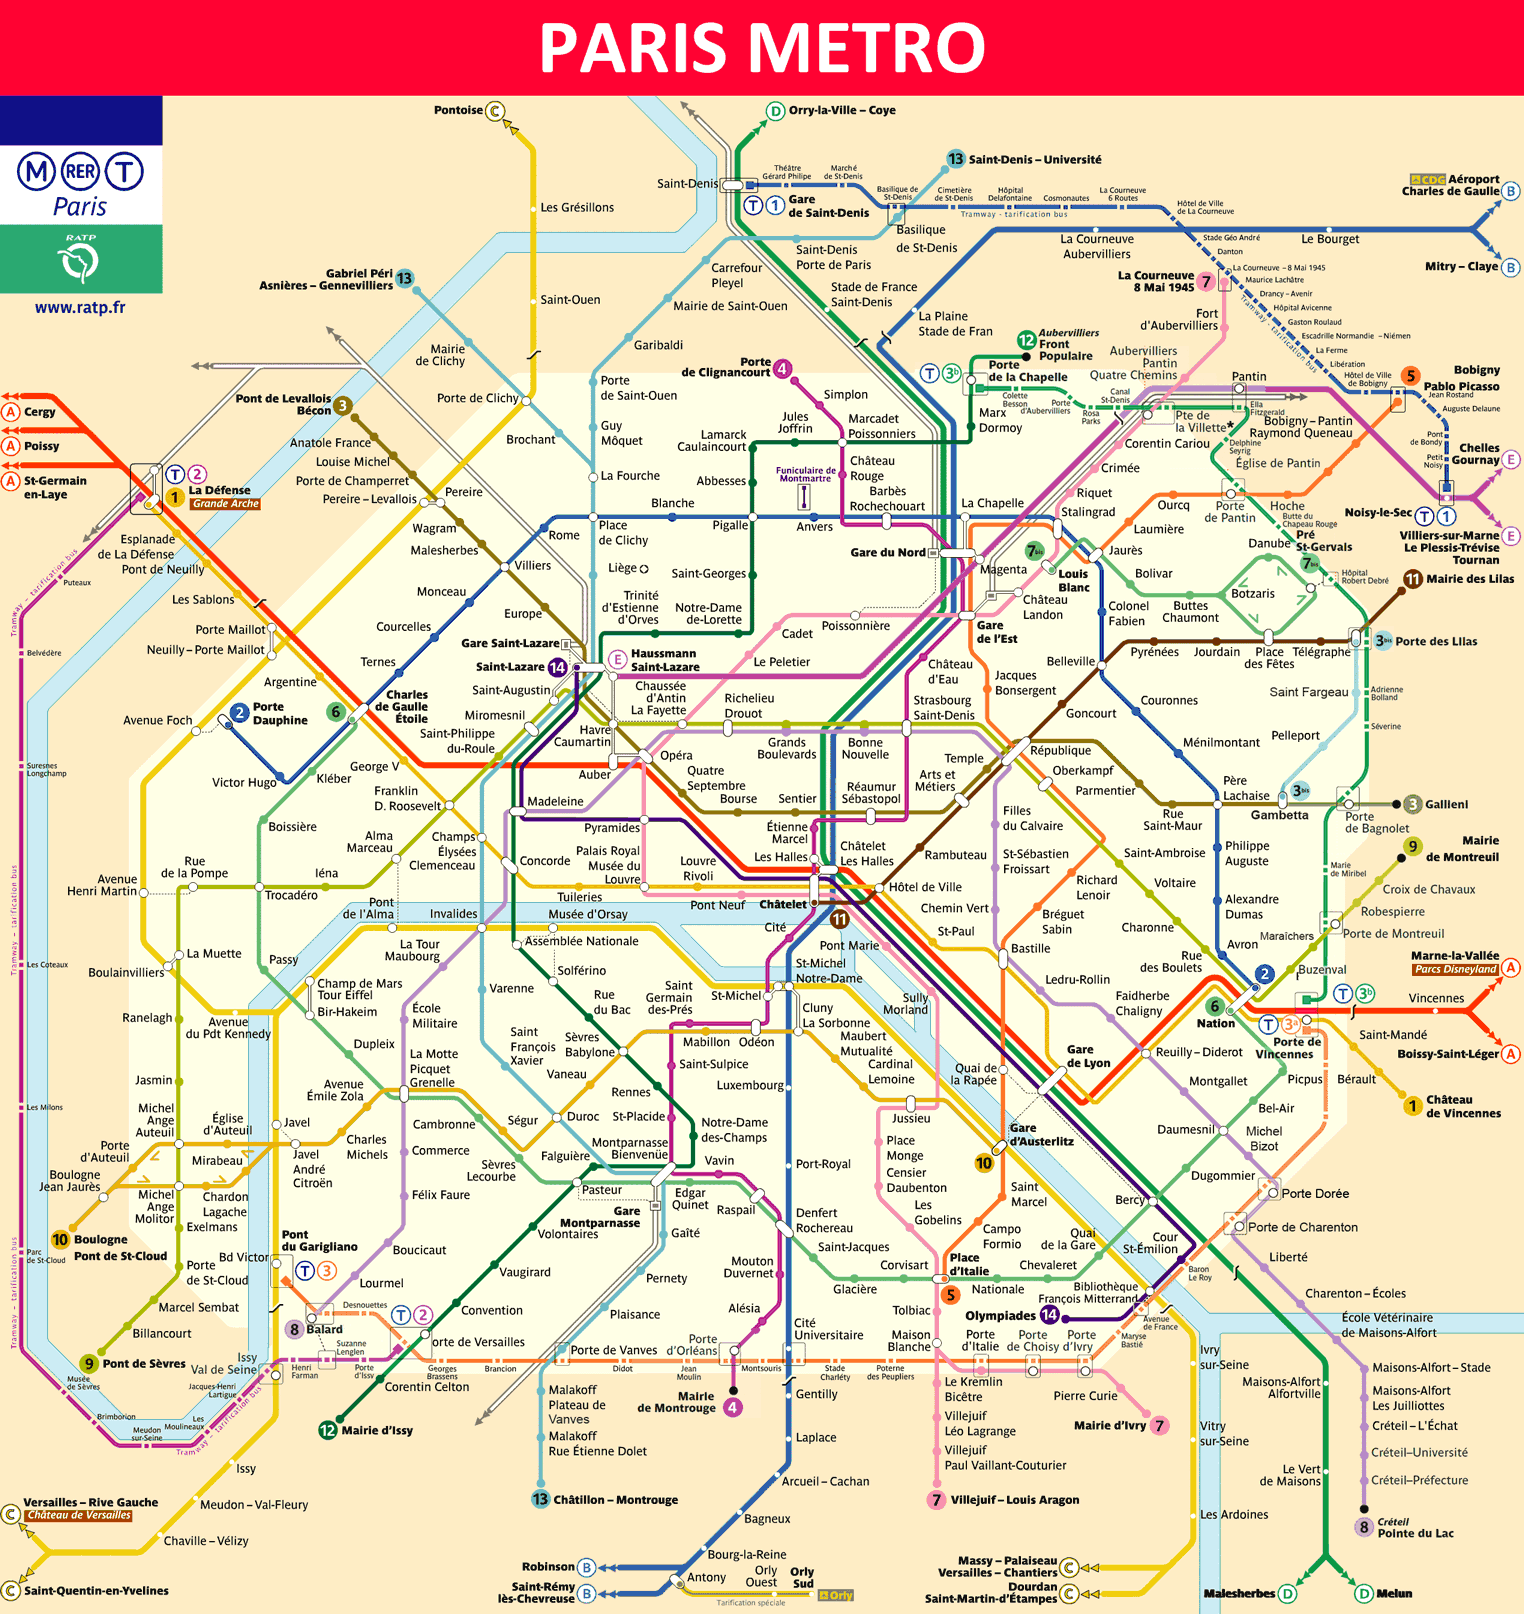 Paris Metro Map 2018 - Timetable, Ticket Price, Tourist Information